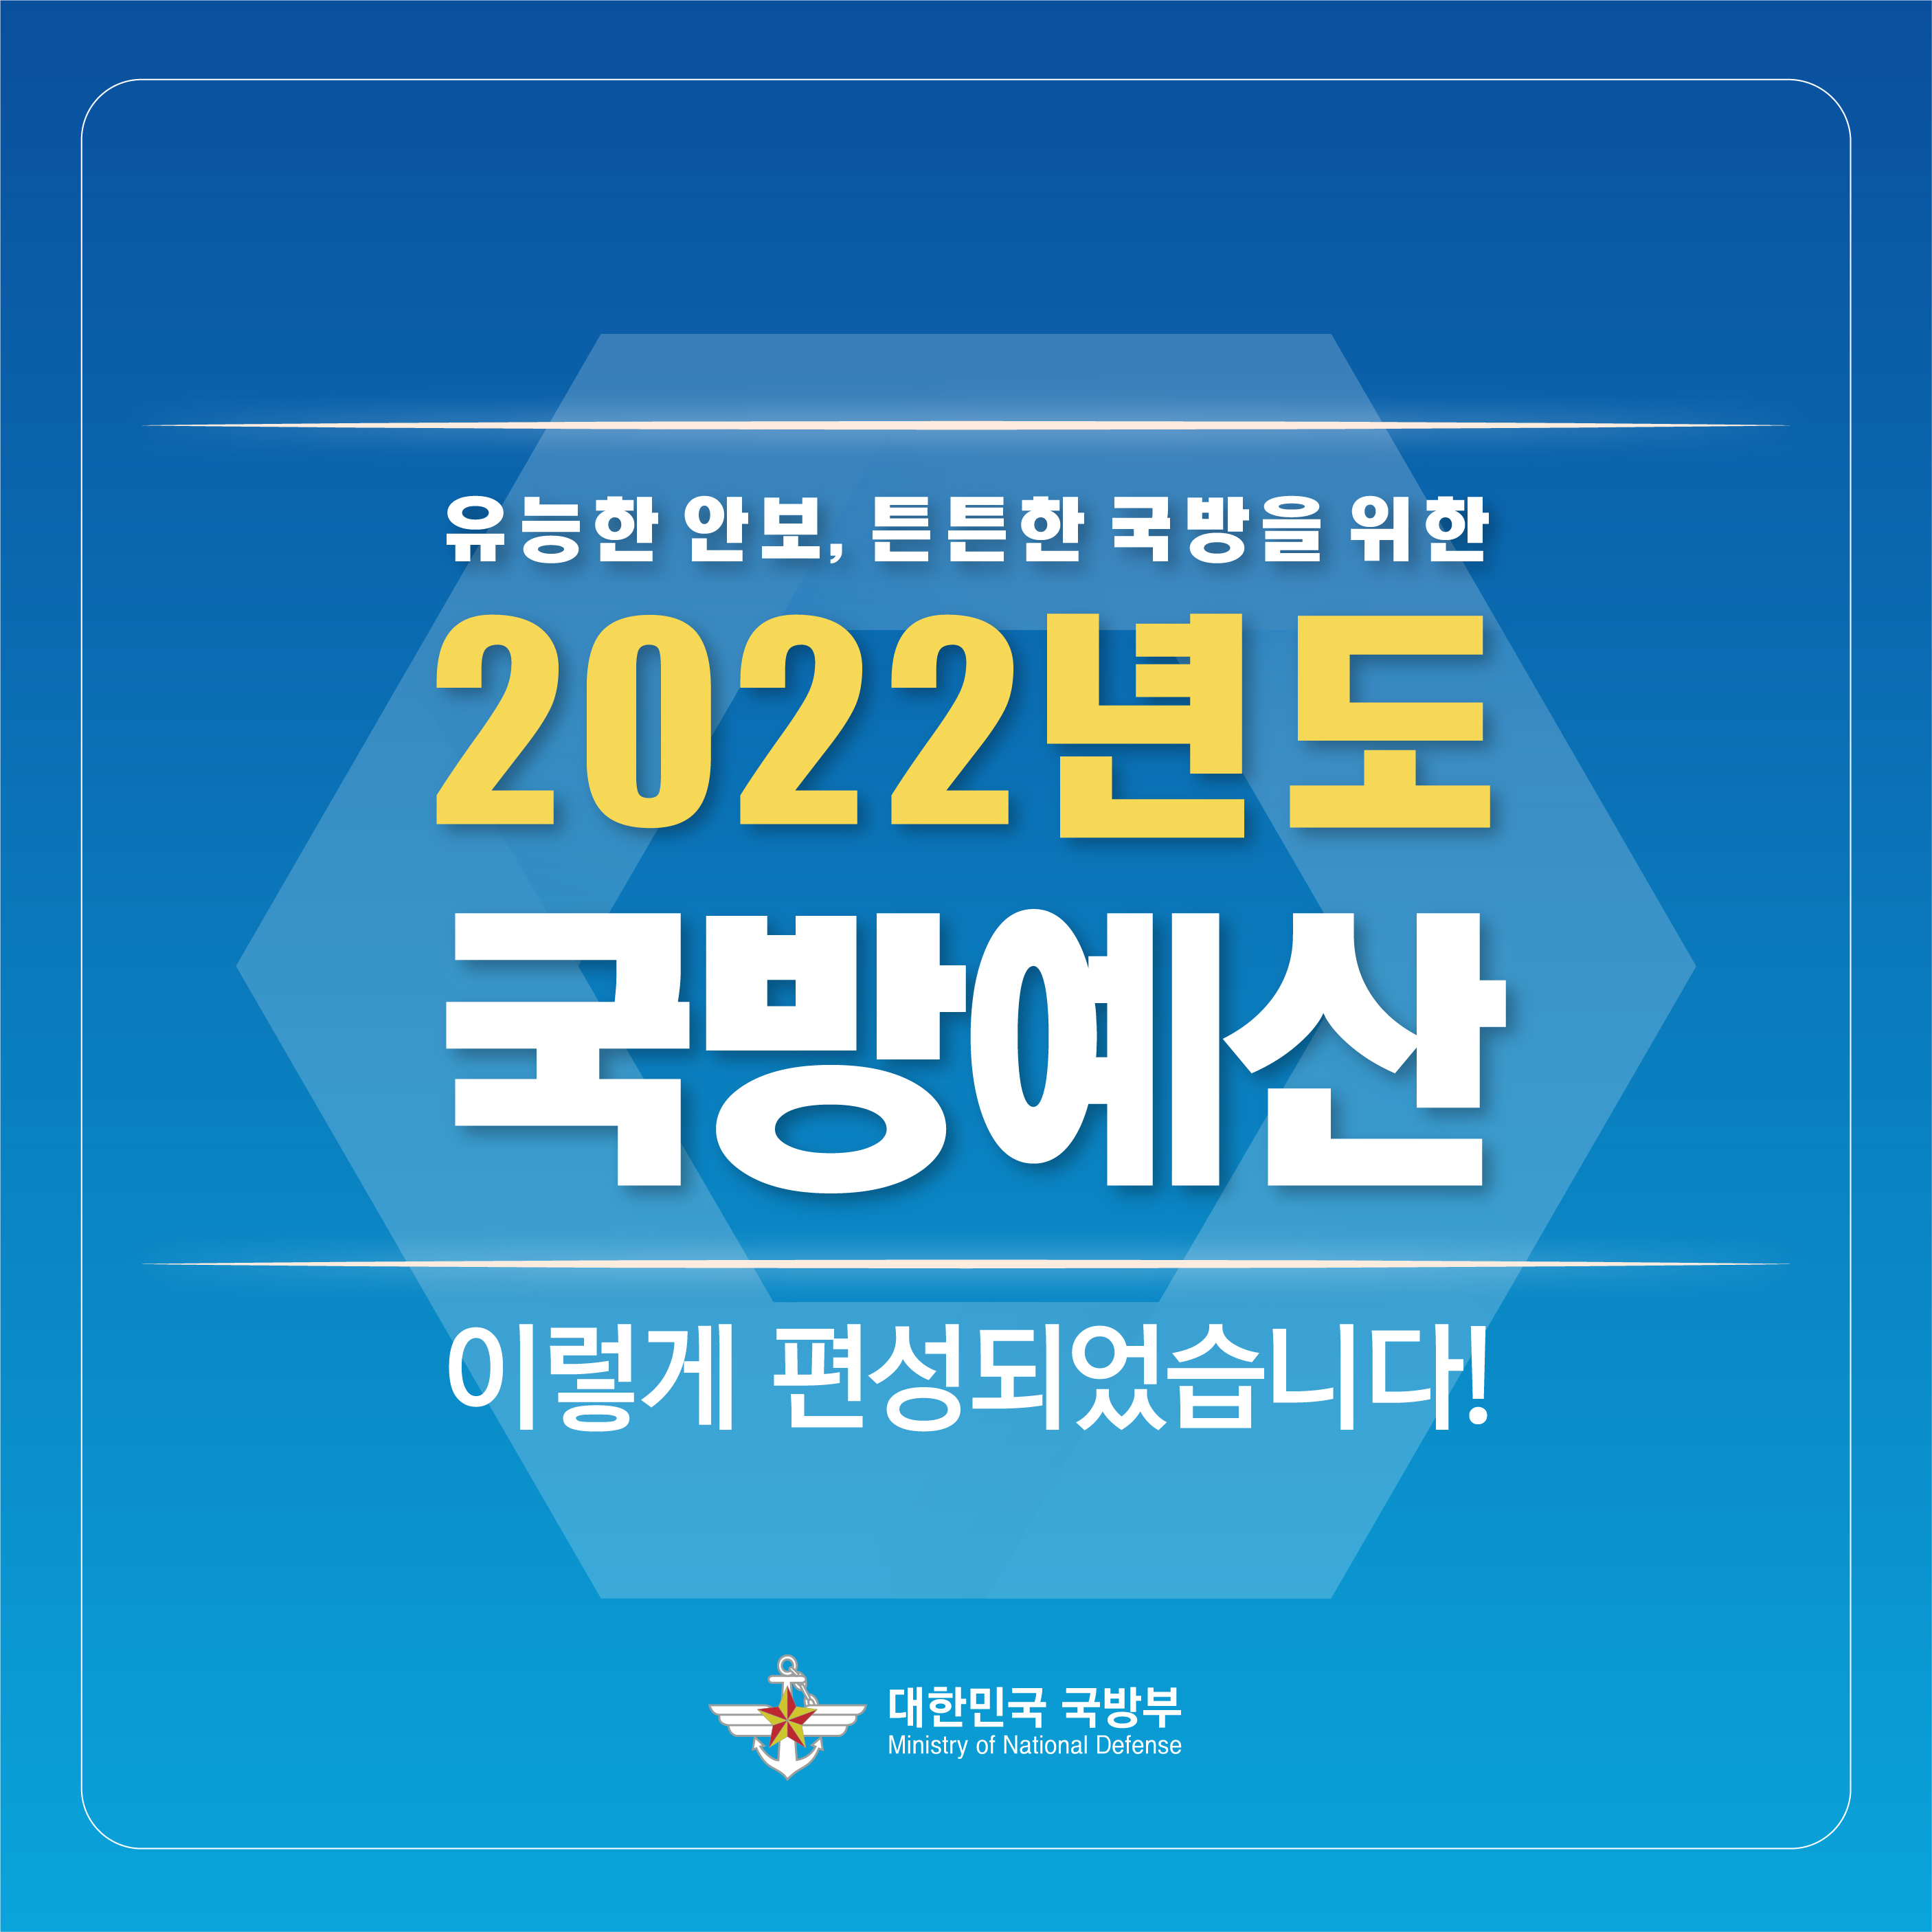 2022 국방예산 카드뉴스 1.jpg